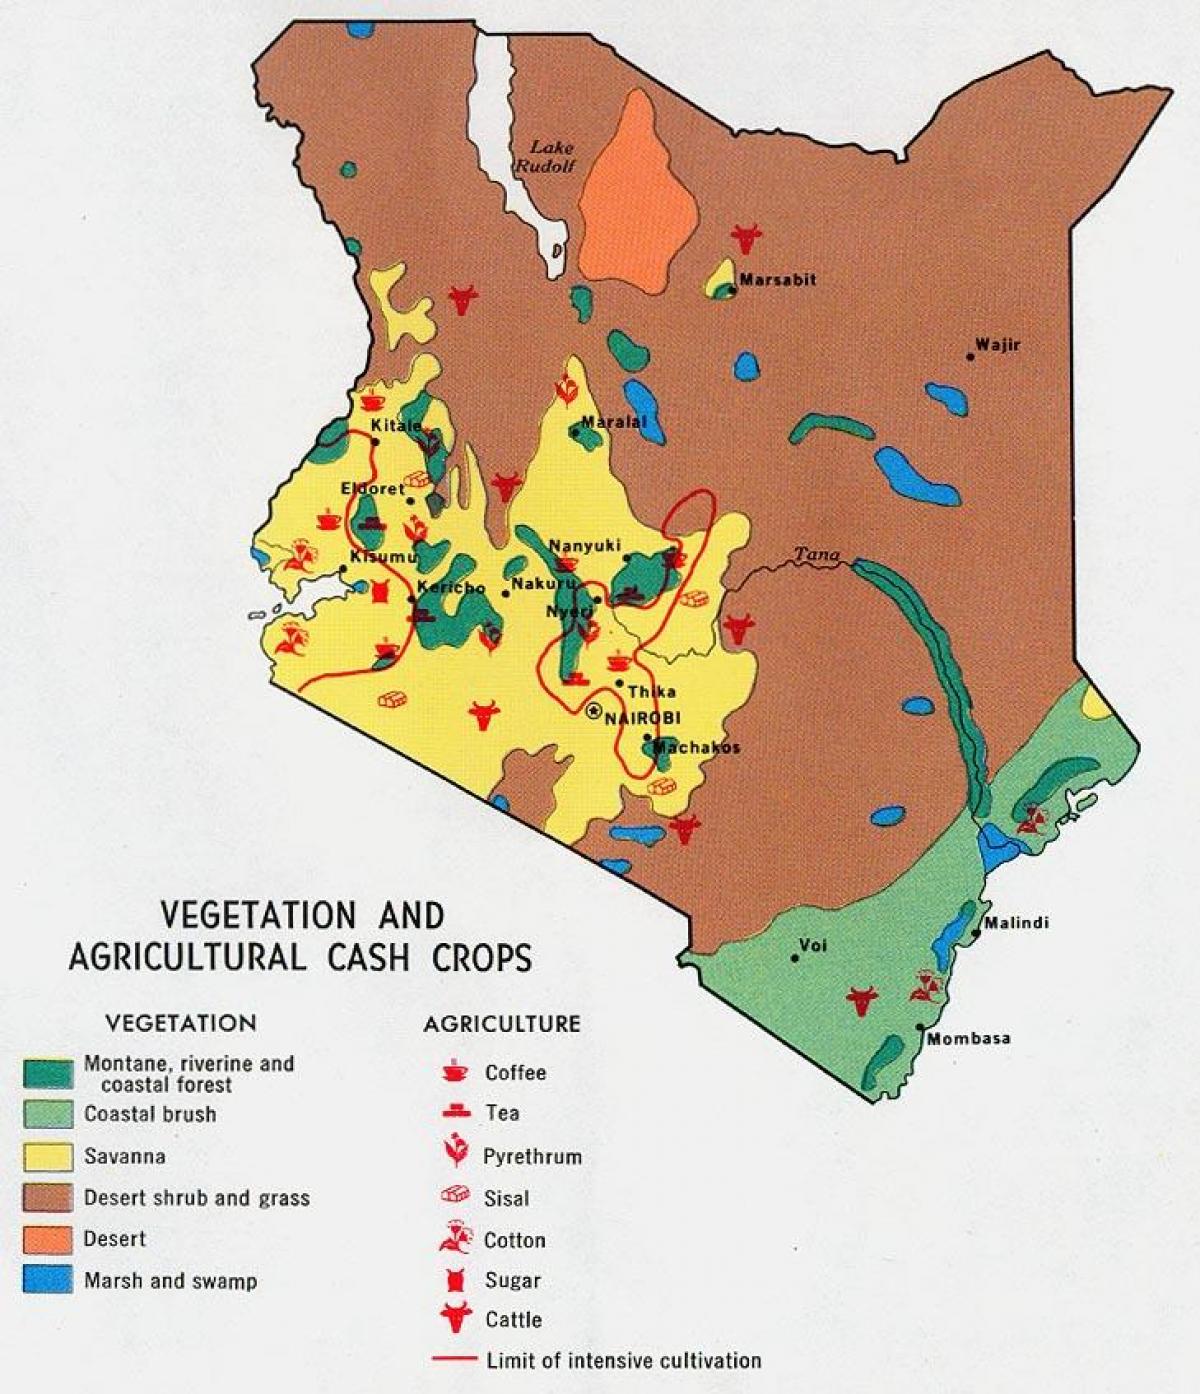 քարտեզ Քենիայում բնական պաշարների նախարար